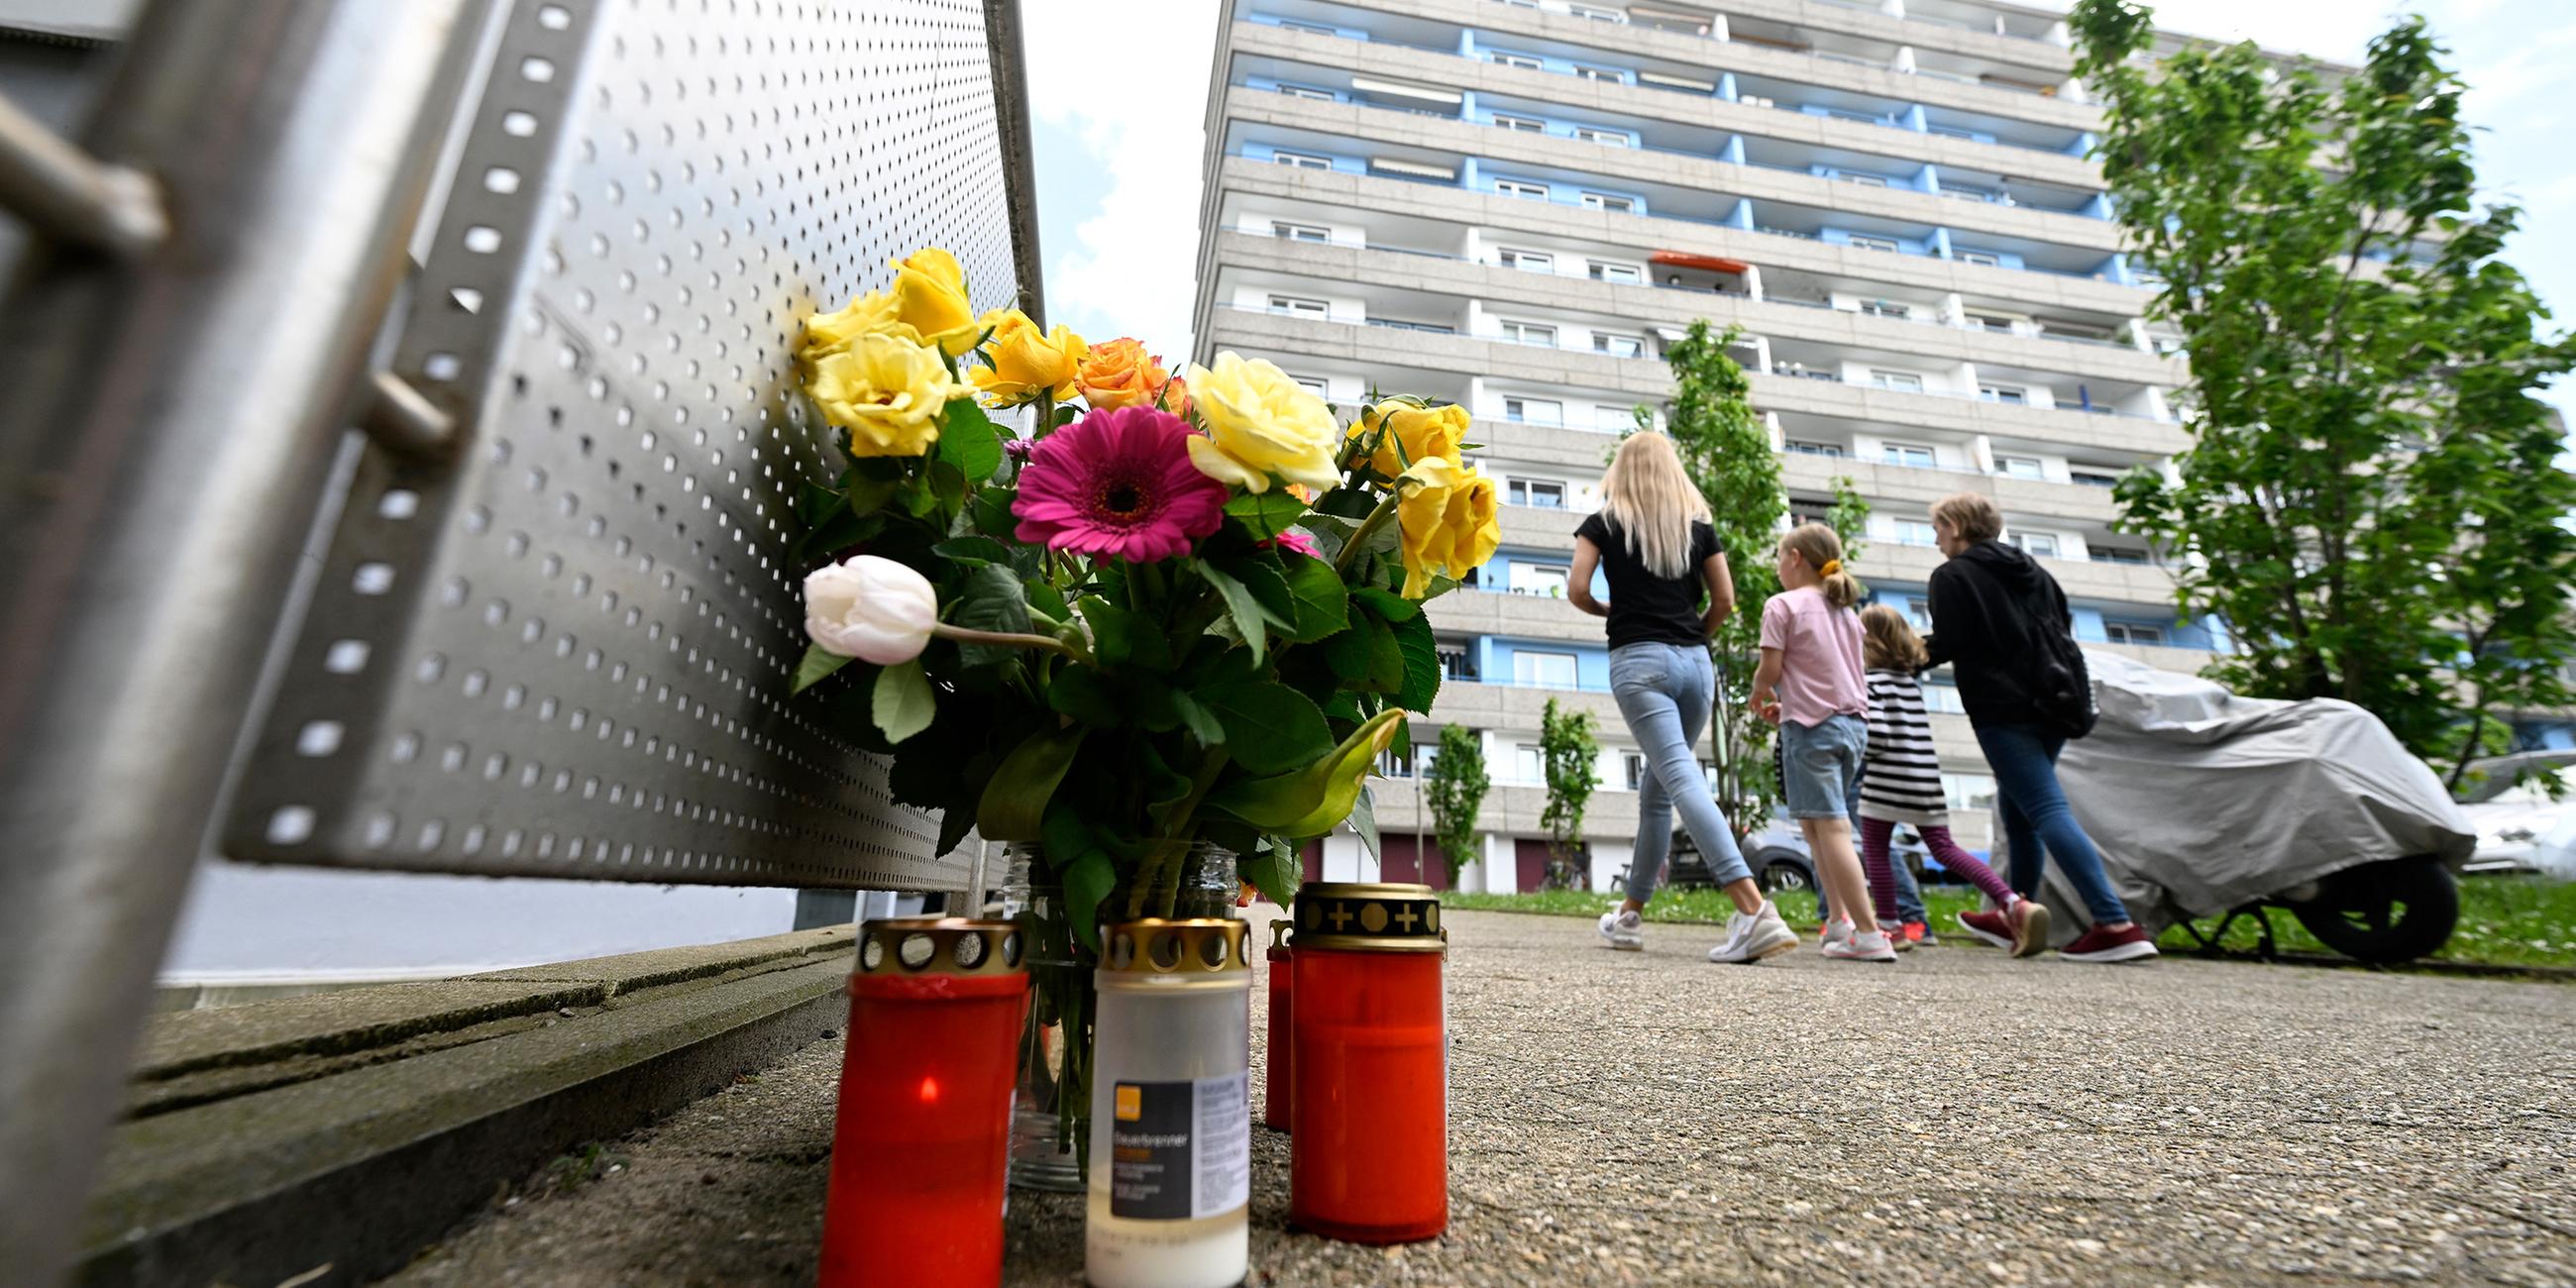 Bürger haben zum Gedenken an die Opfer der Explosion in einem Hochhaus, bei dem mehrere Einsatzkräfte von Polizei und Feuerwehr schwer verletzt wurden, am Tatort Kerzen und Blumen niedergelegt